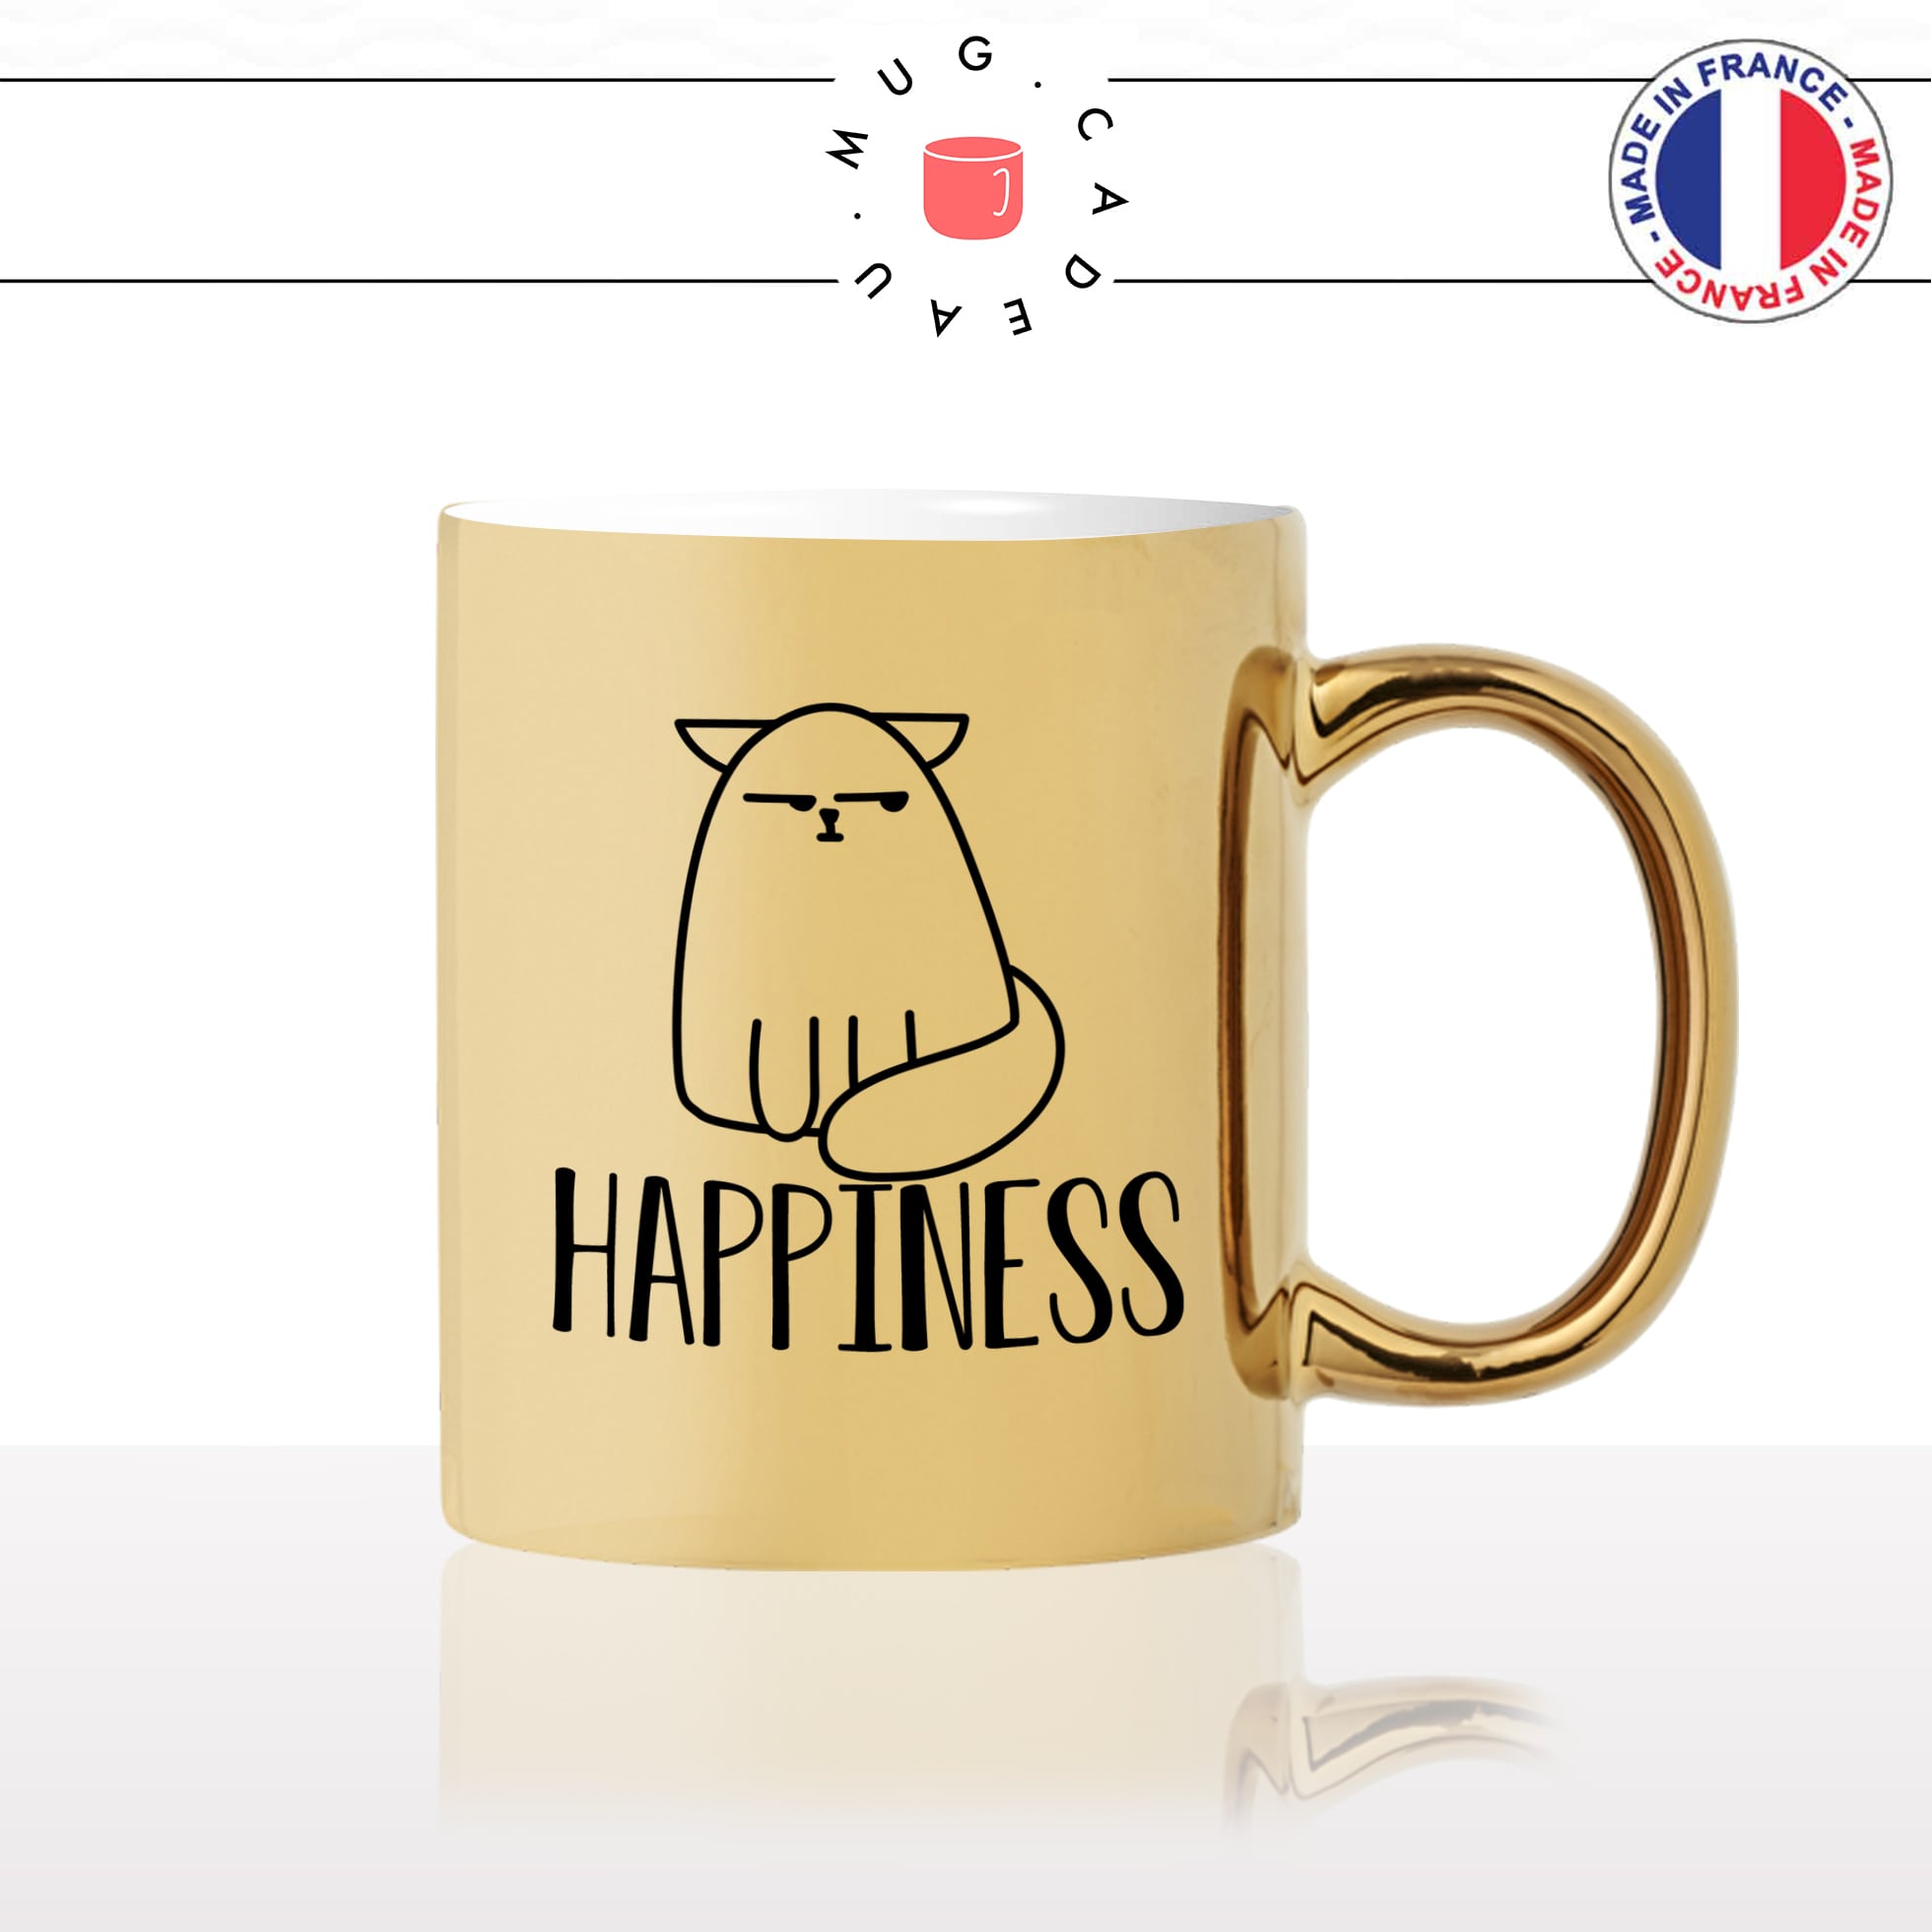 mug-tasse-or-doré-happiness-happy-content-humour-chat-mignon-animal-chaton-noir-fun-café-thé-idée-cadeau-original-personnalisé-gold2-min